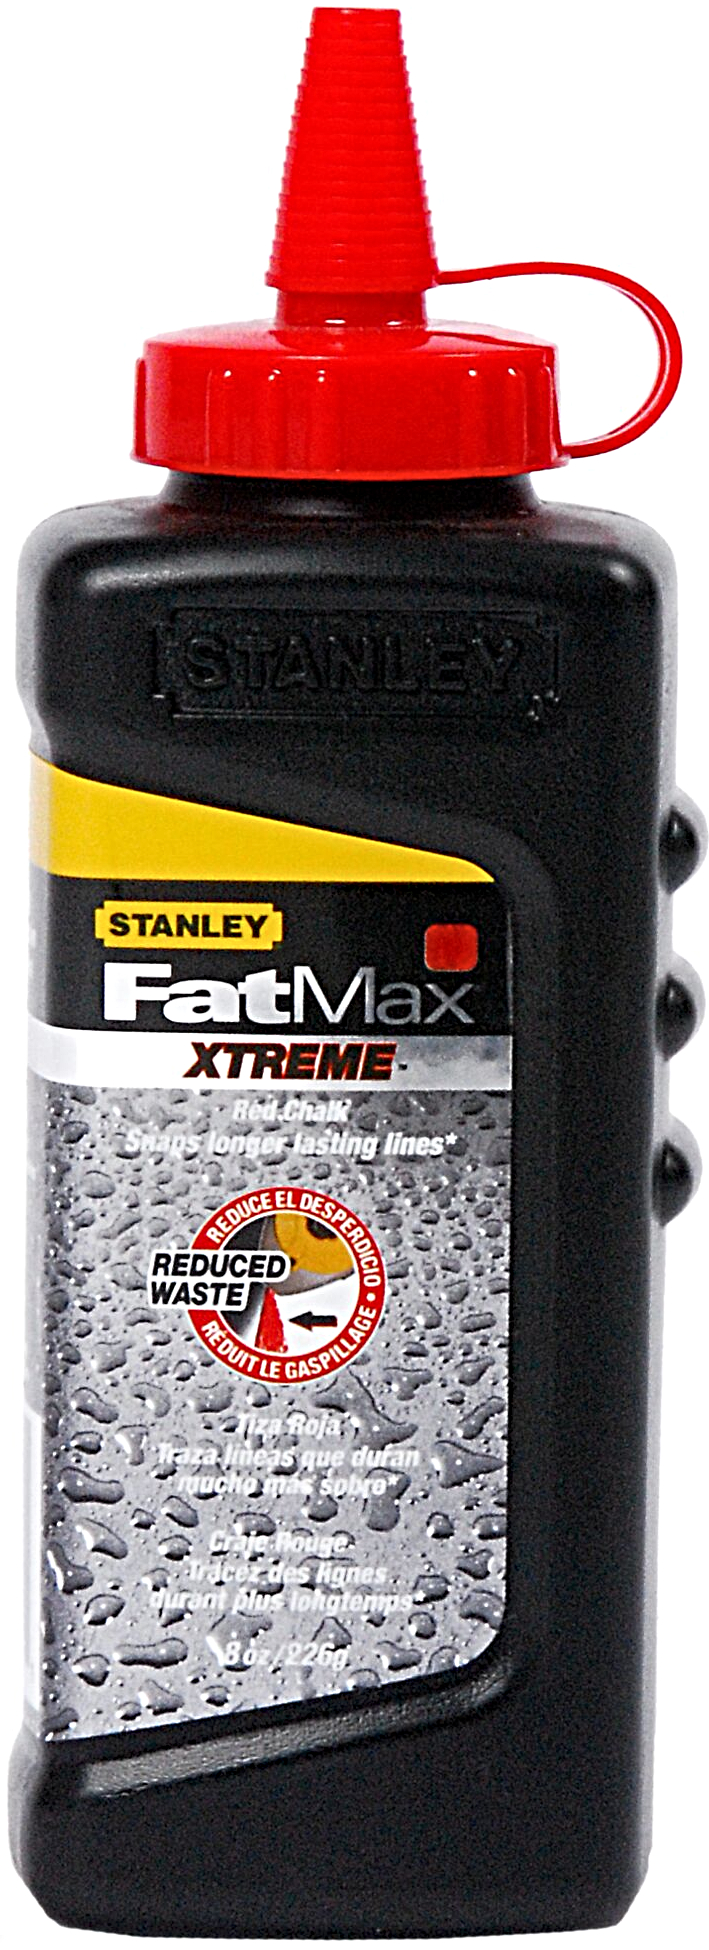 STANLEY 9-47-821 práškové křídy FatMax Xtreme - červená